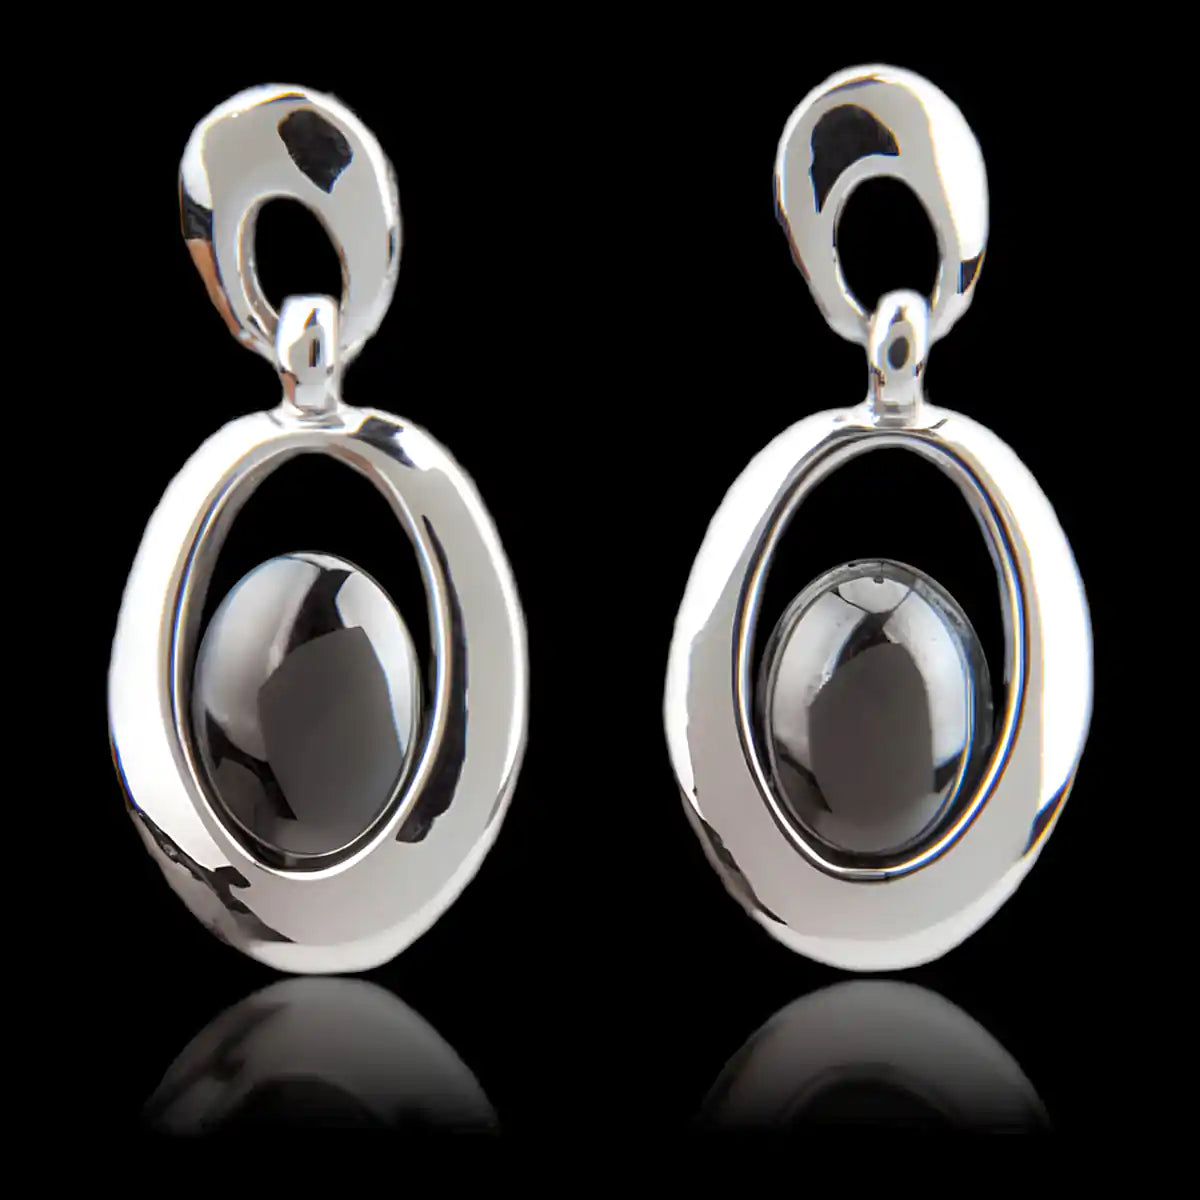 Hematite clarity earrings